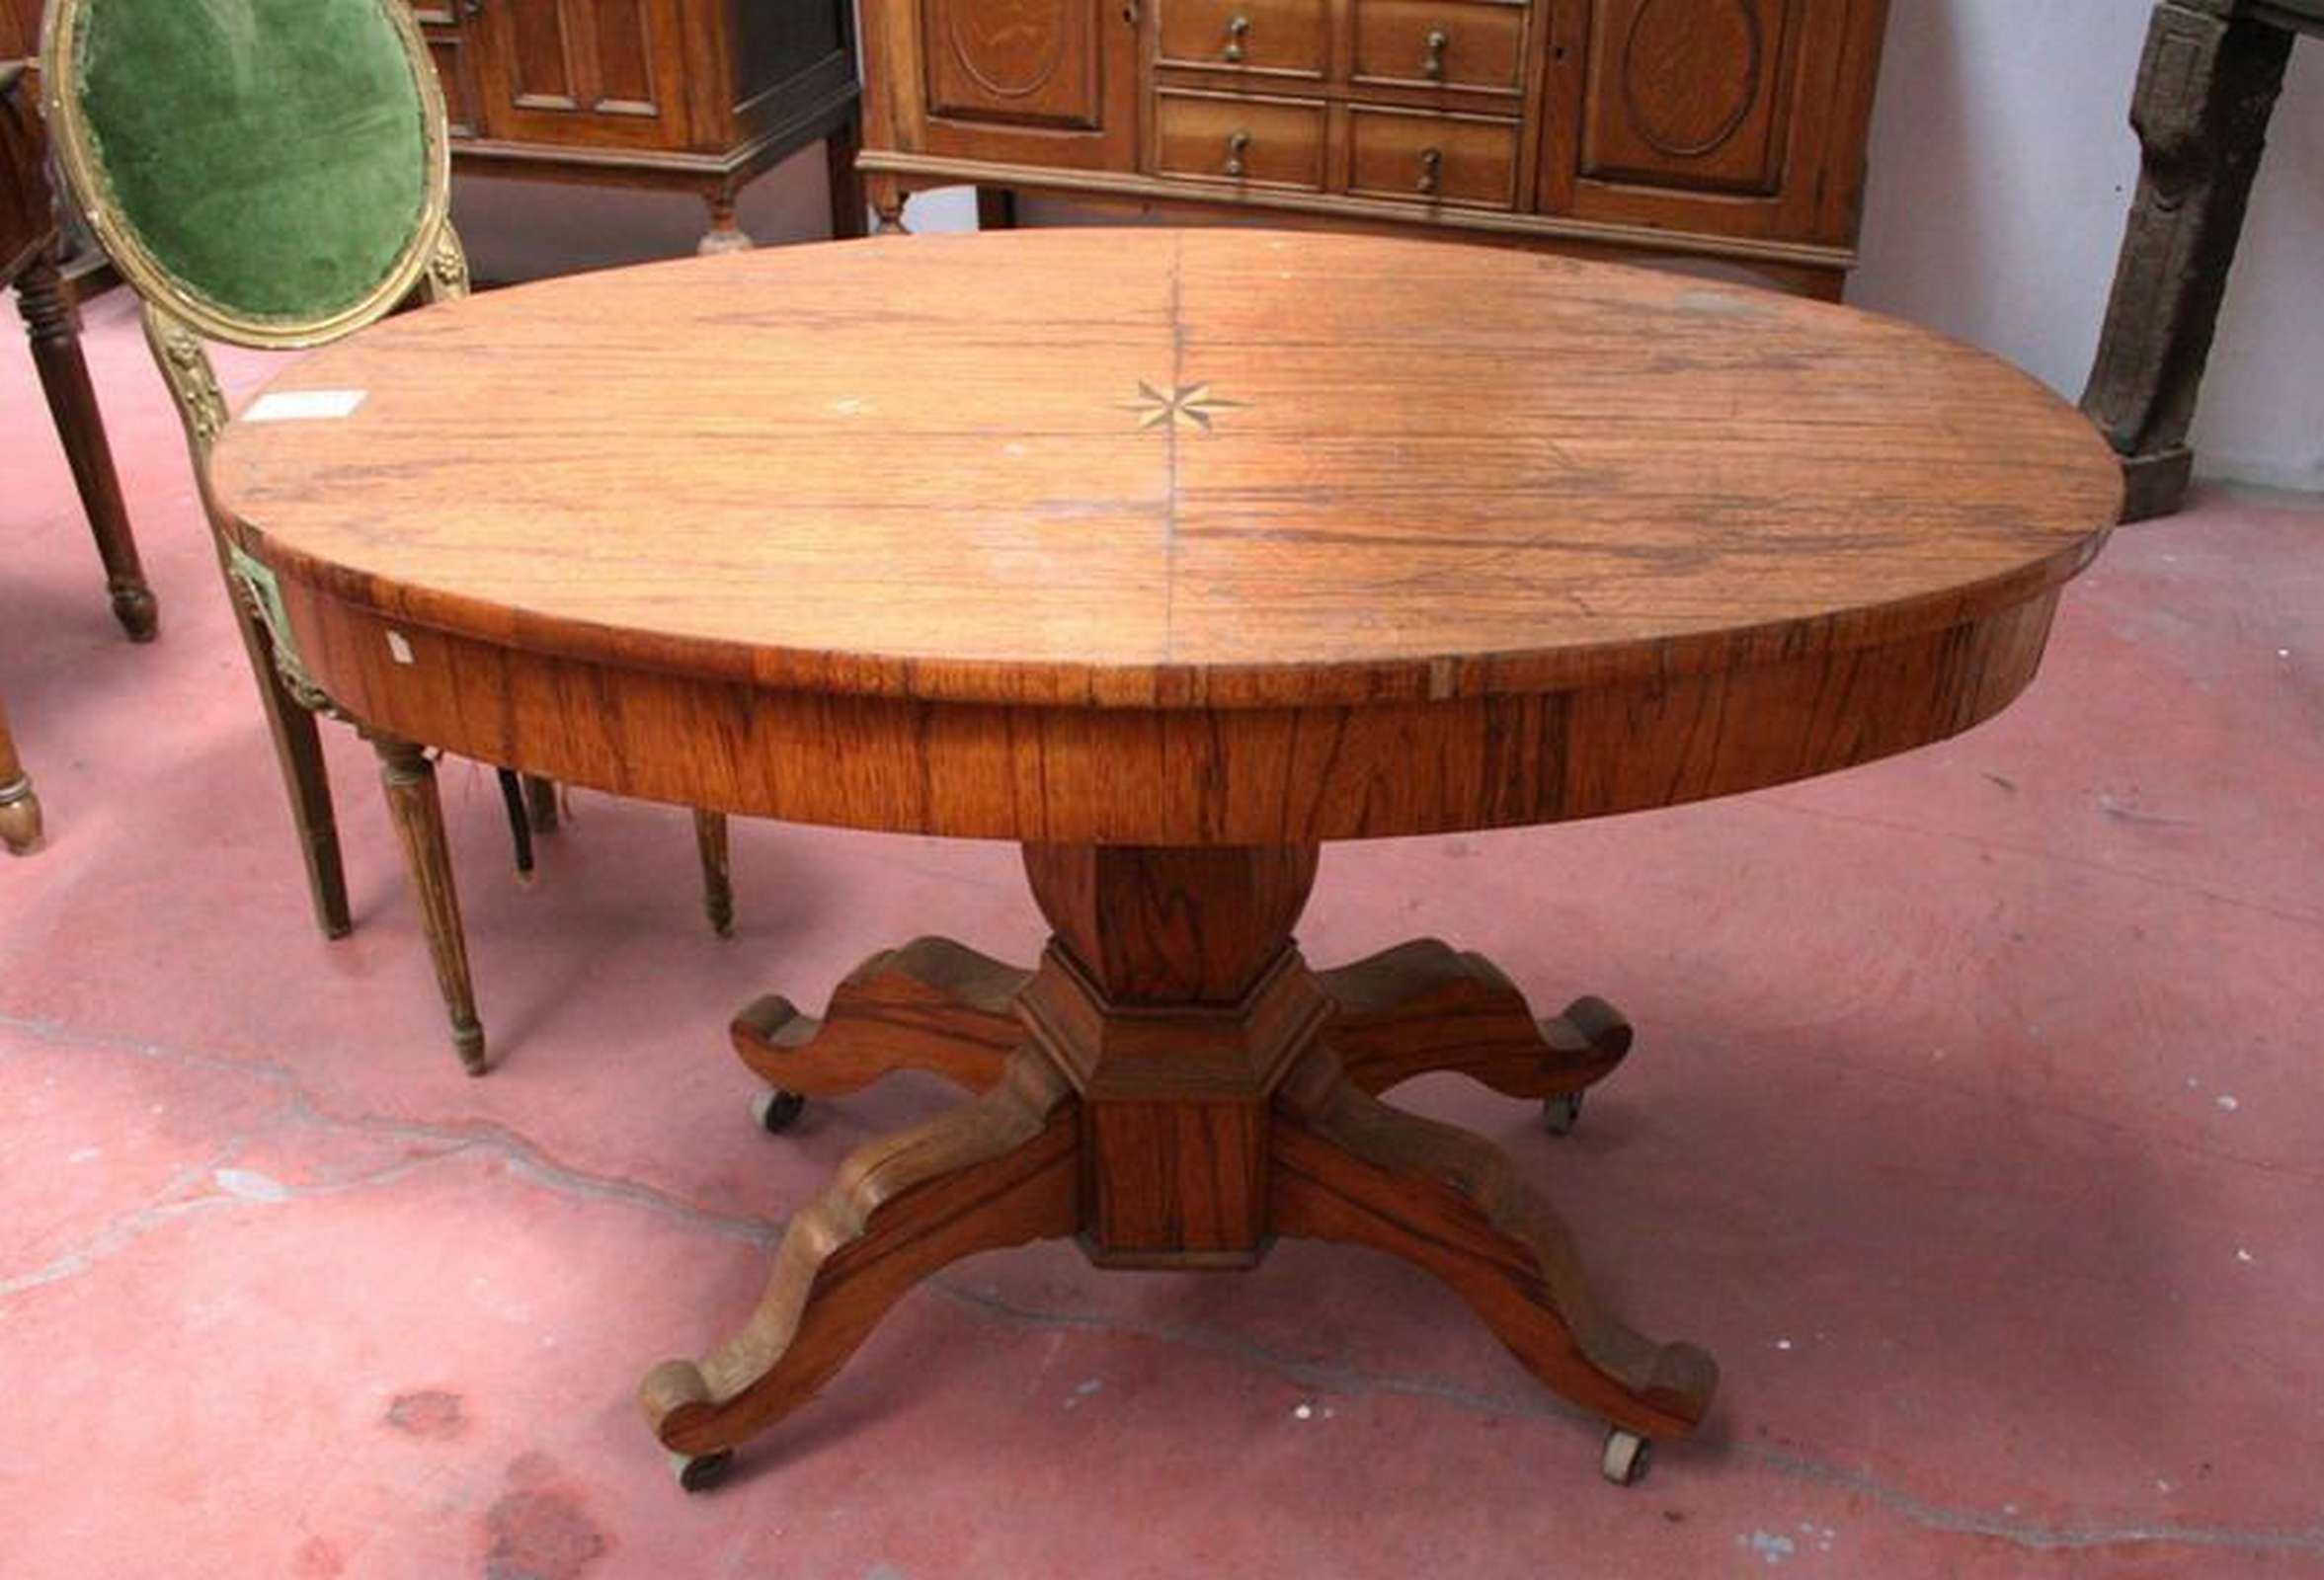 Tavolo in legno ovale - Tavoli in legno - Tavoli e complementi - Prodotti - Antichità Fiorillo